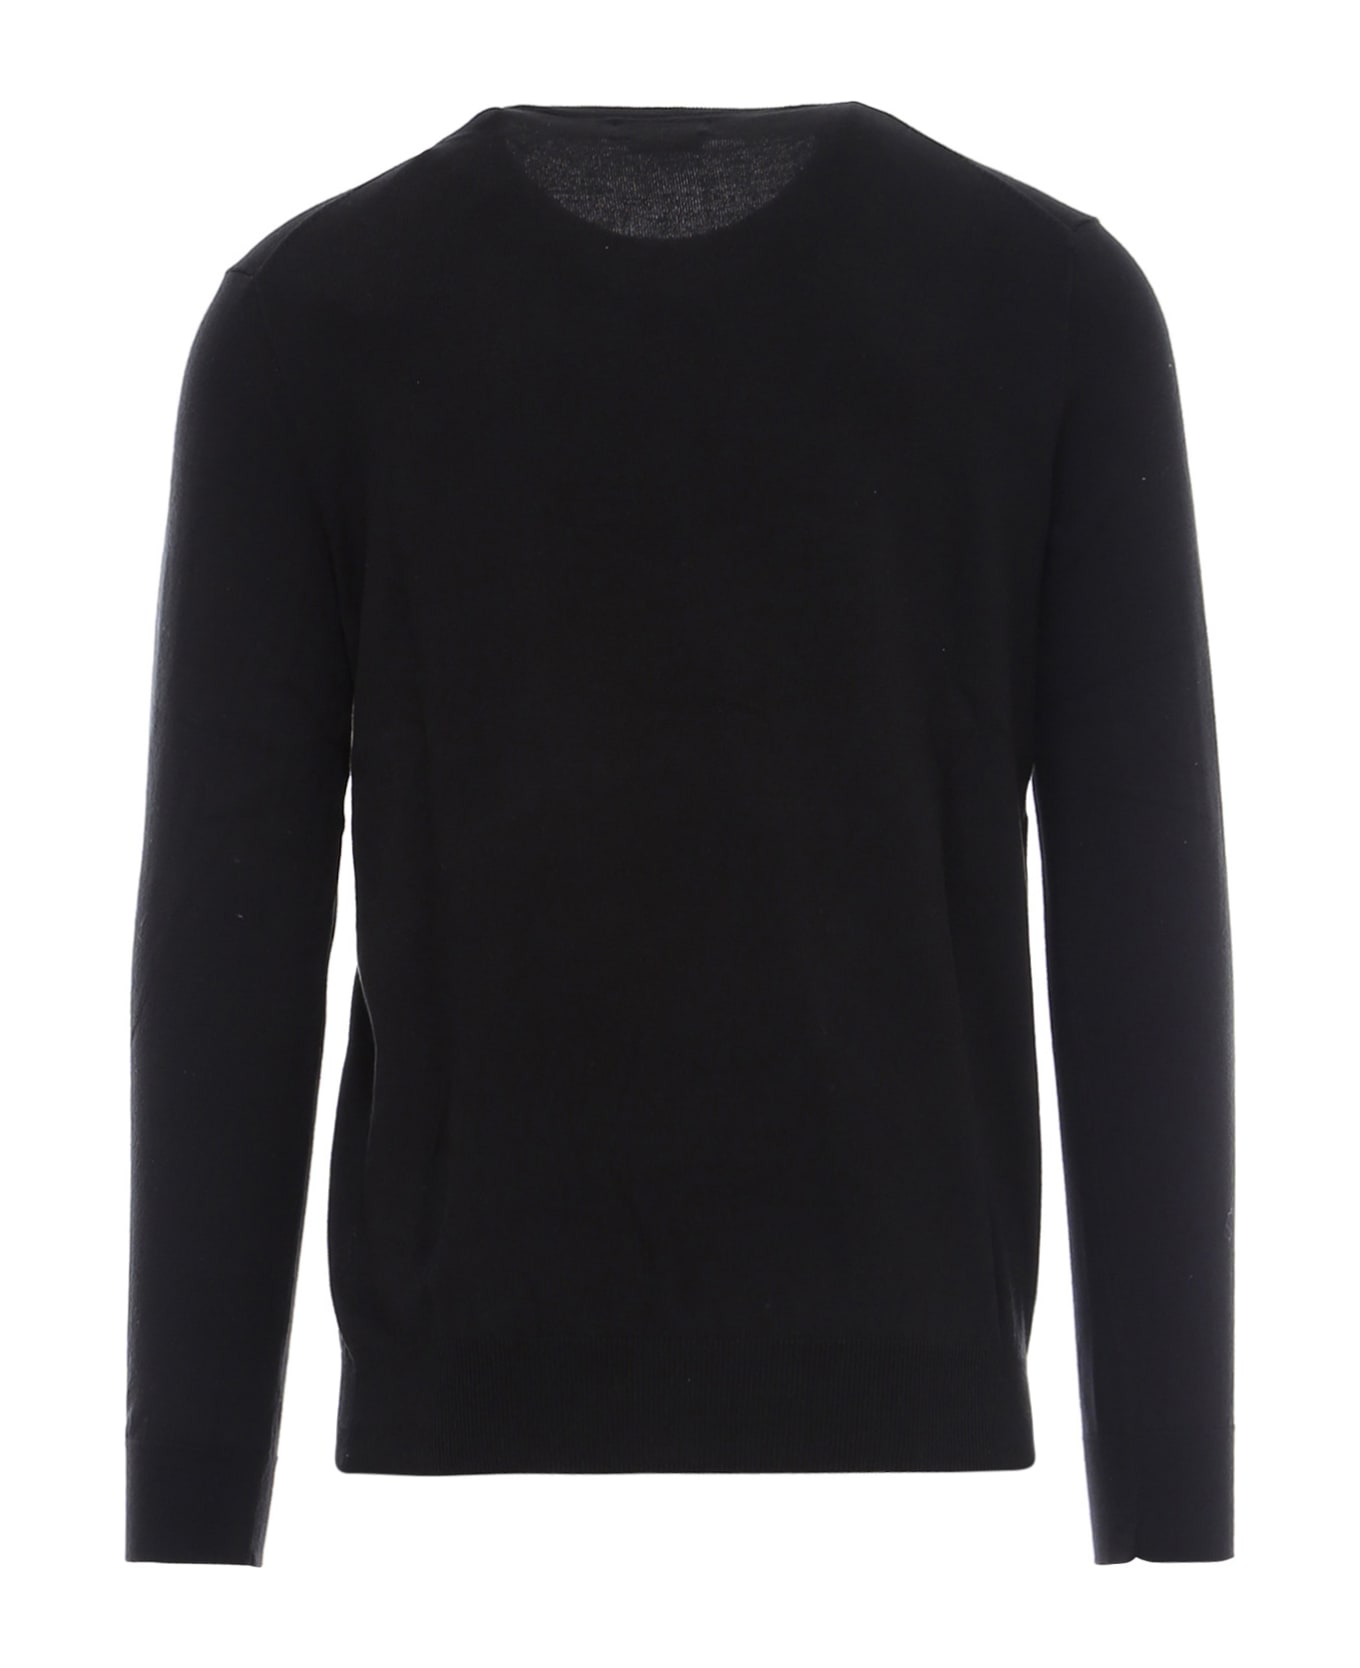 Ralph Lauren Sweater - Black ニットウェア